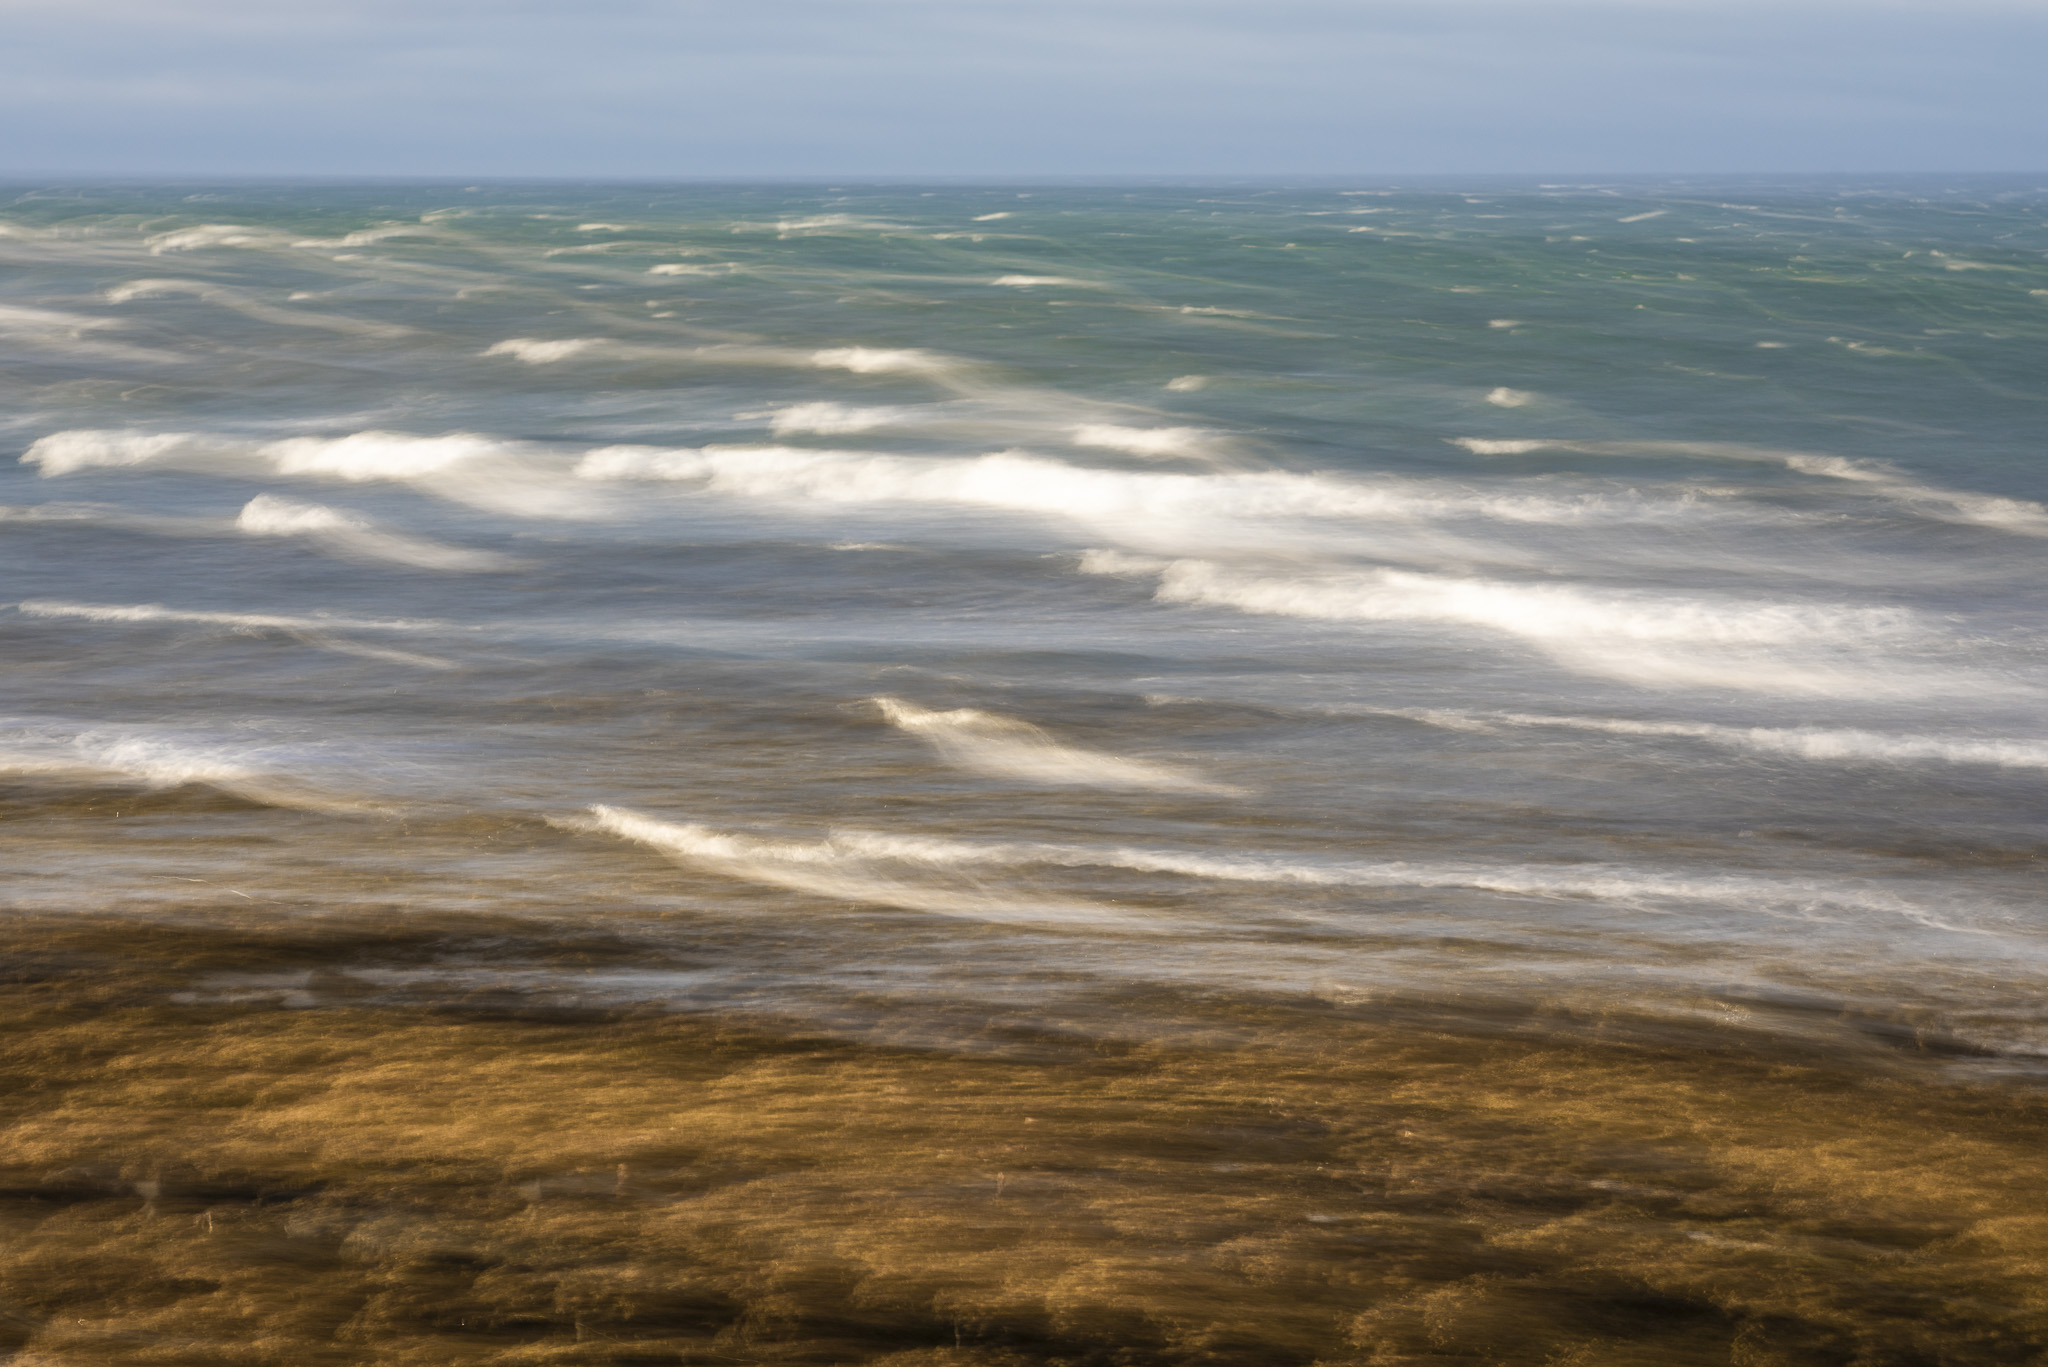 Abstraktes Bild aus Island, Landschaft mit Meer wo sich Wellen brechen.